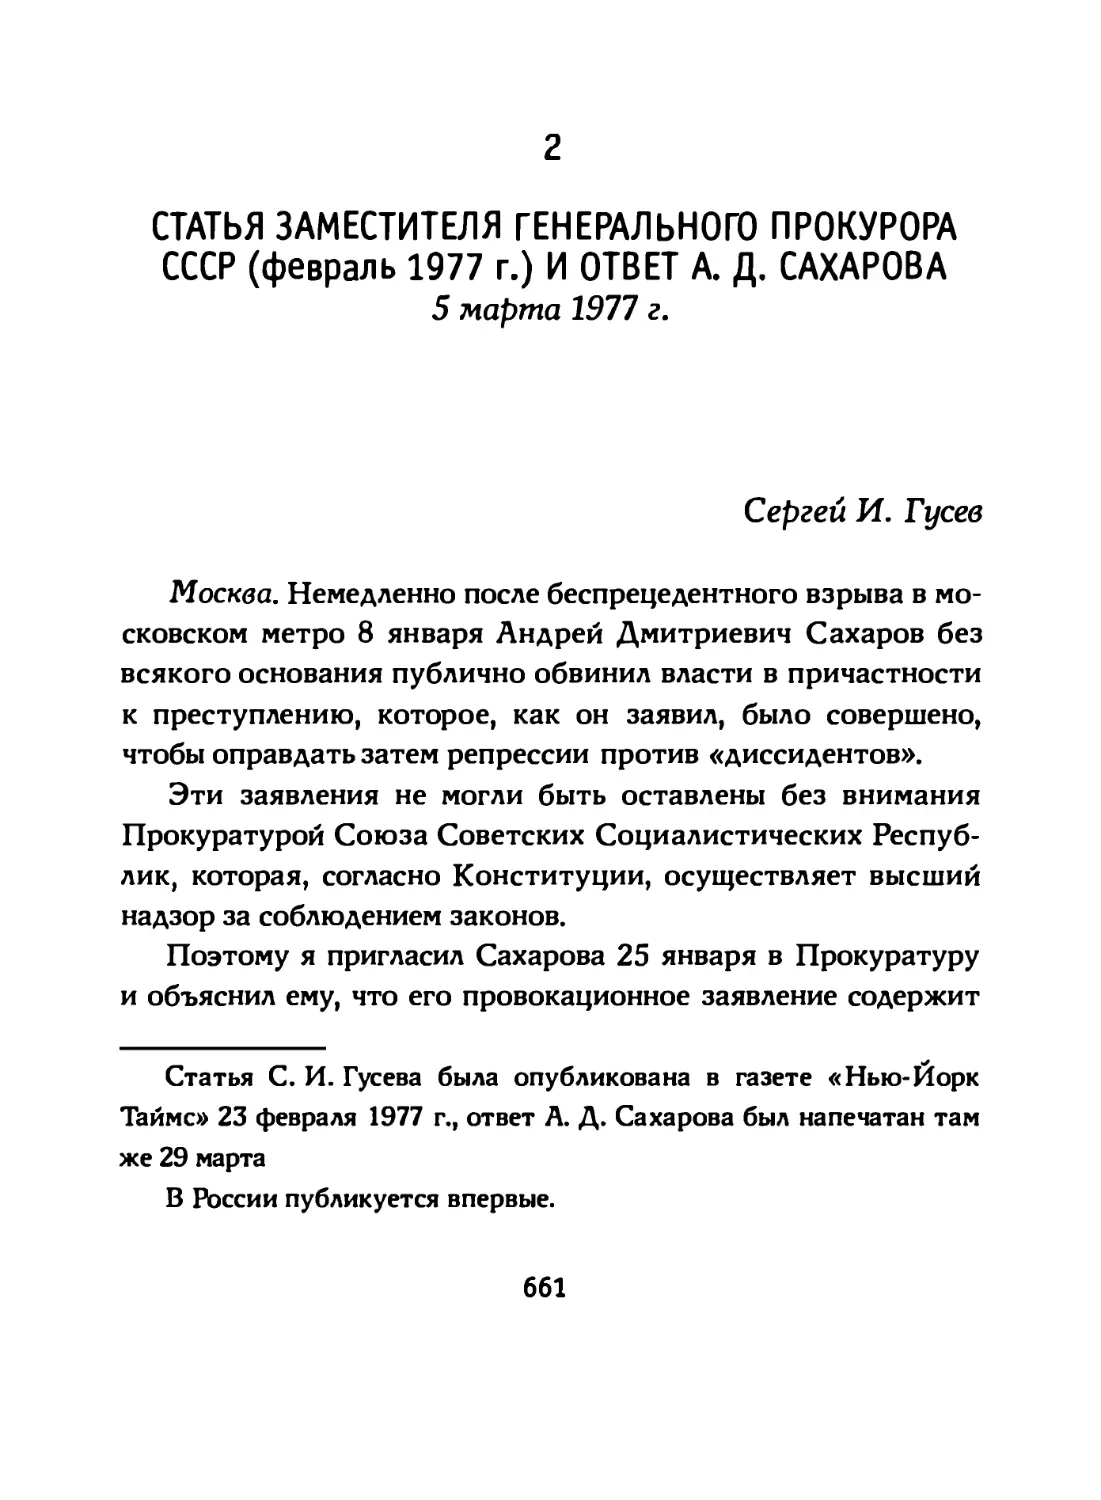 2. Статья заместителя Генерального Прокурора СССР (февраль 1977 г.) и ответ А. Д. Сахарова (5 марта 1977 г.)